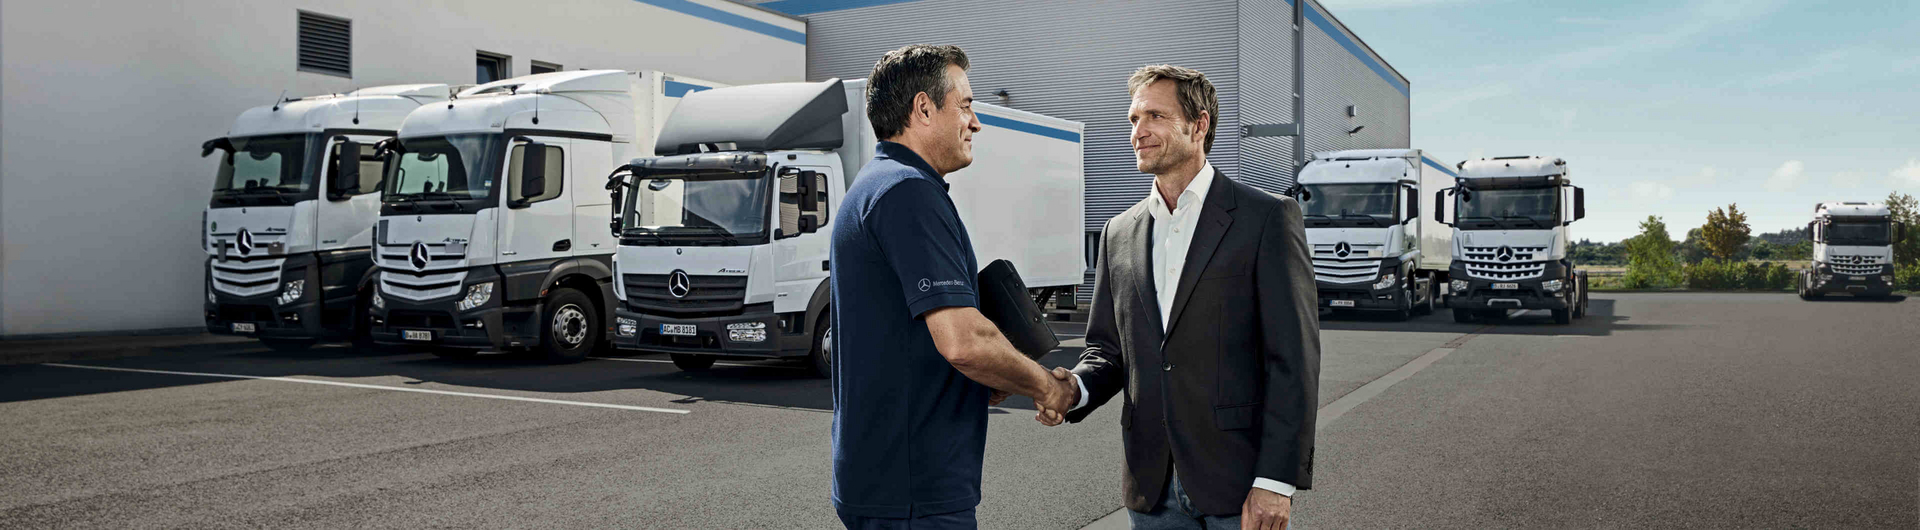 Die Mercedes-Benz Service Contracts - Anschlussgarantie, Wartung & mehr für Ihren LKW bei der RKG Nutzfahrzeuge